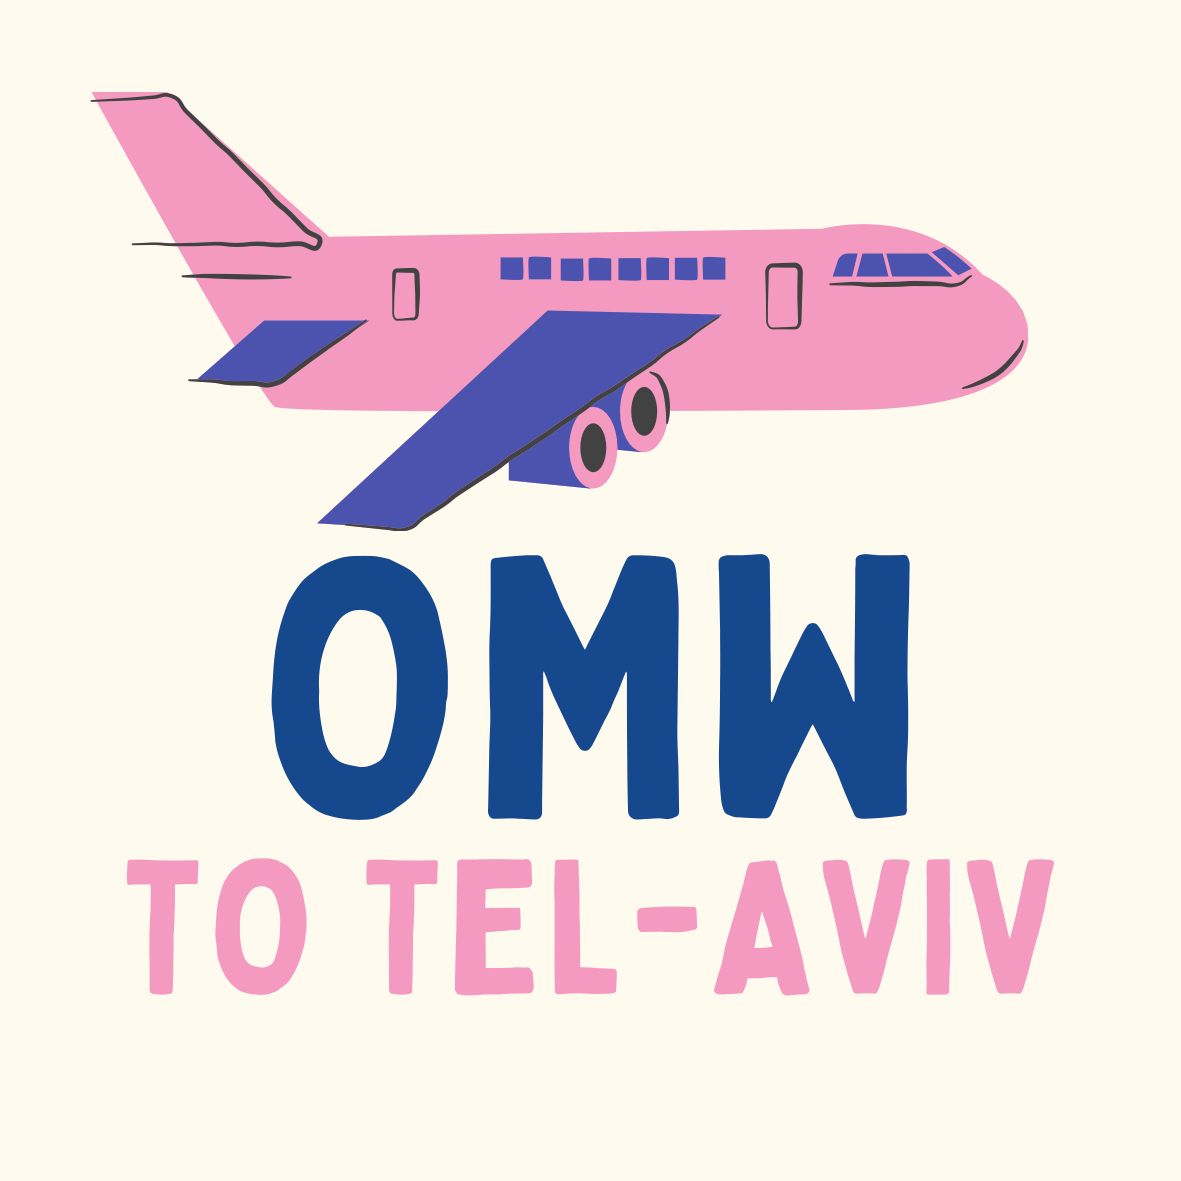 Ruben's Tel Aviv Sticker Set